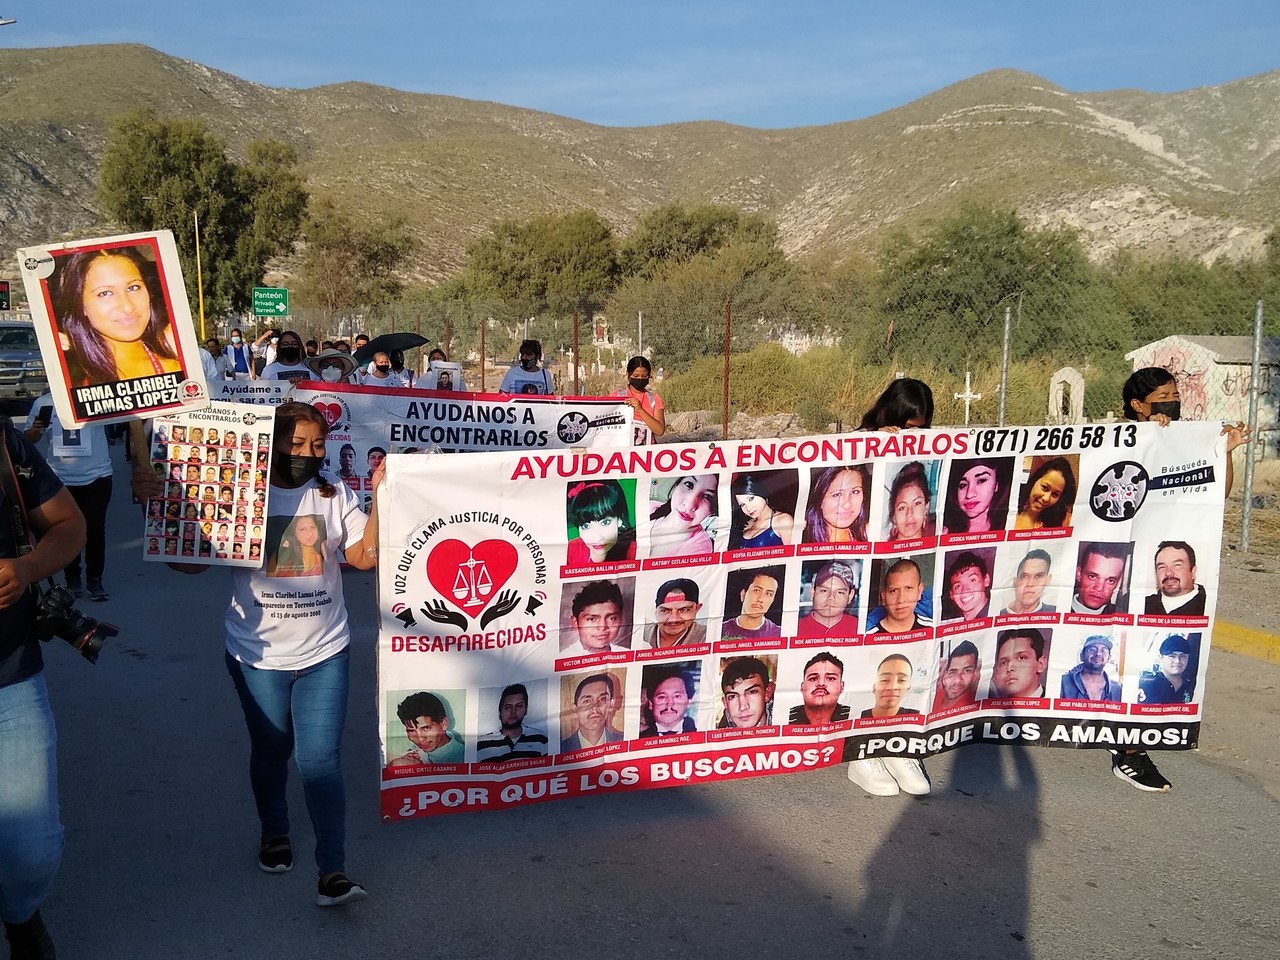 '¡Queremos justicia... ahora!', exigen familias de desaparecidos durante marcha en cementerio de Torreón